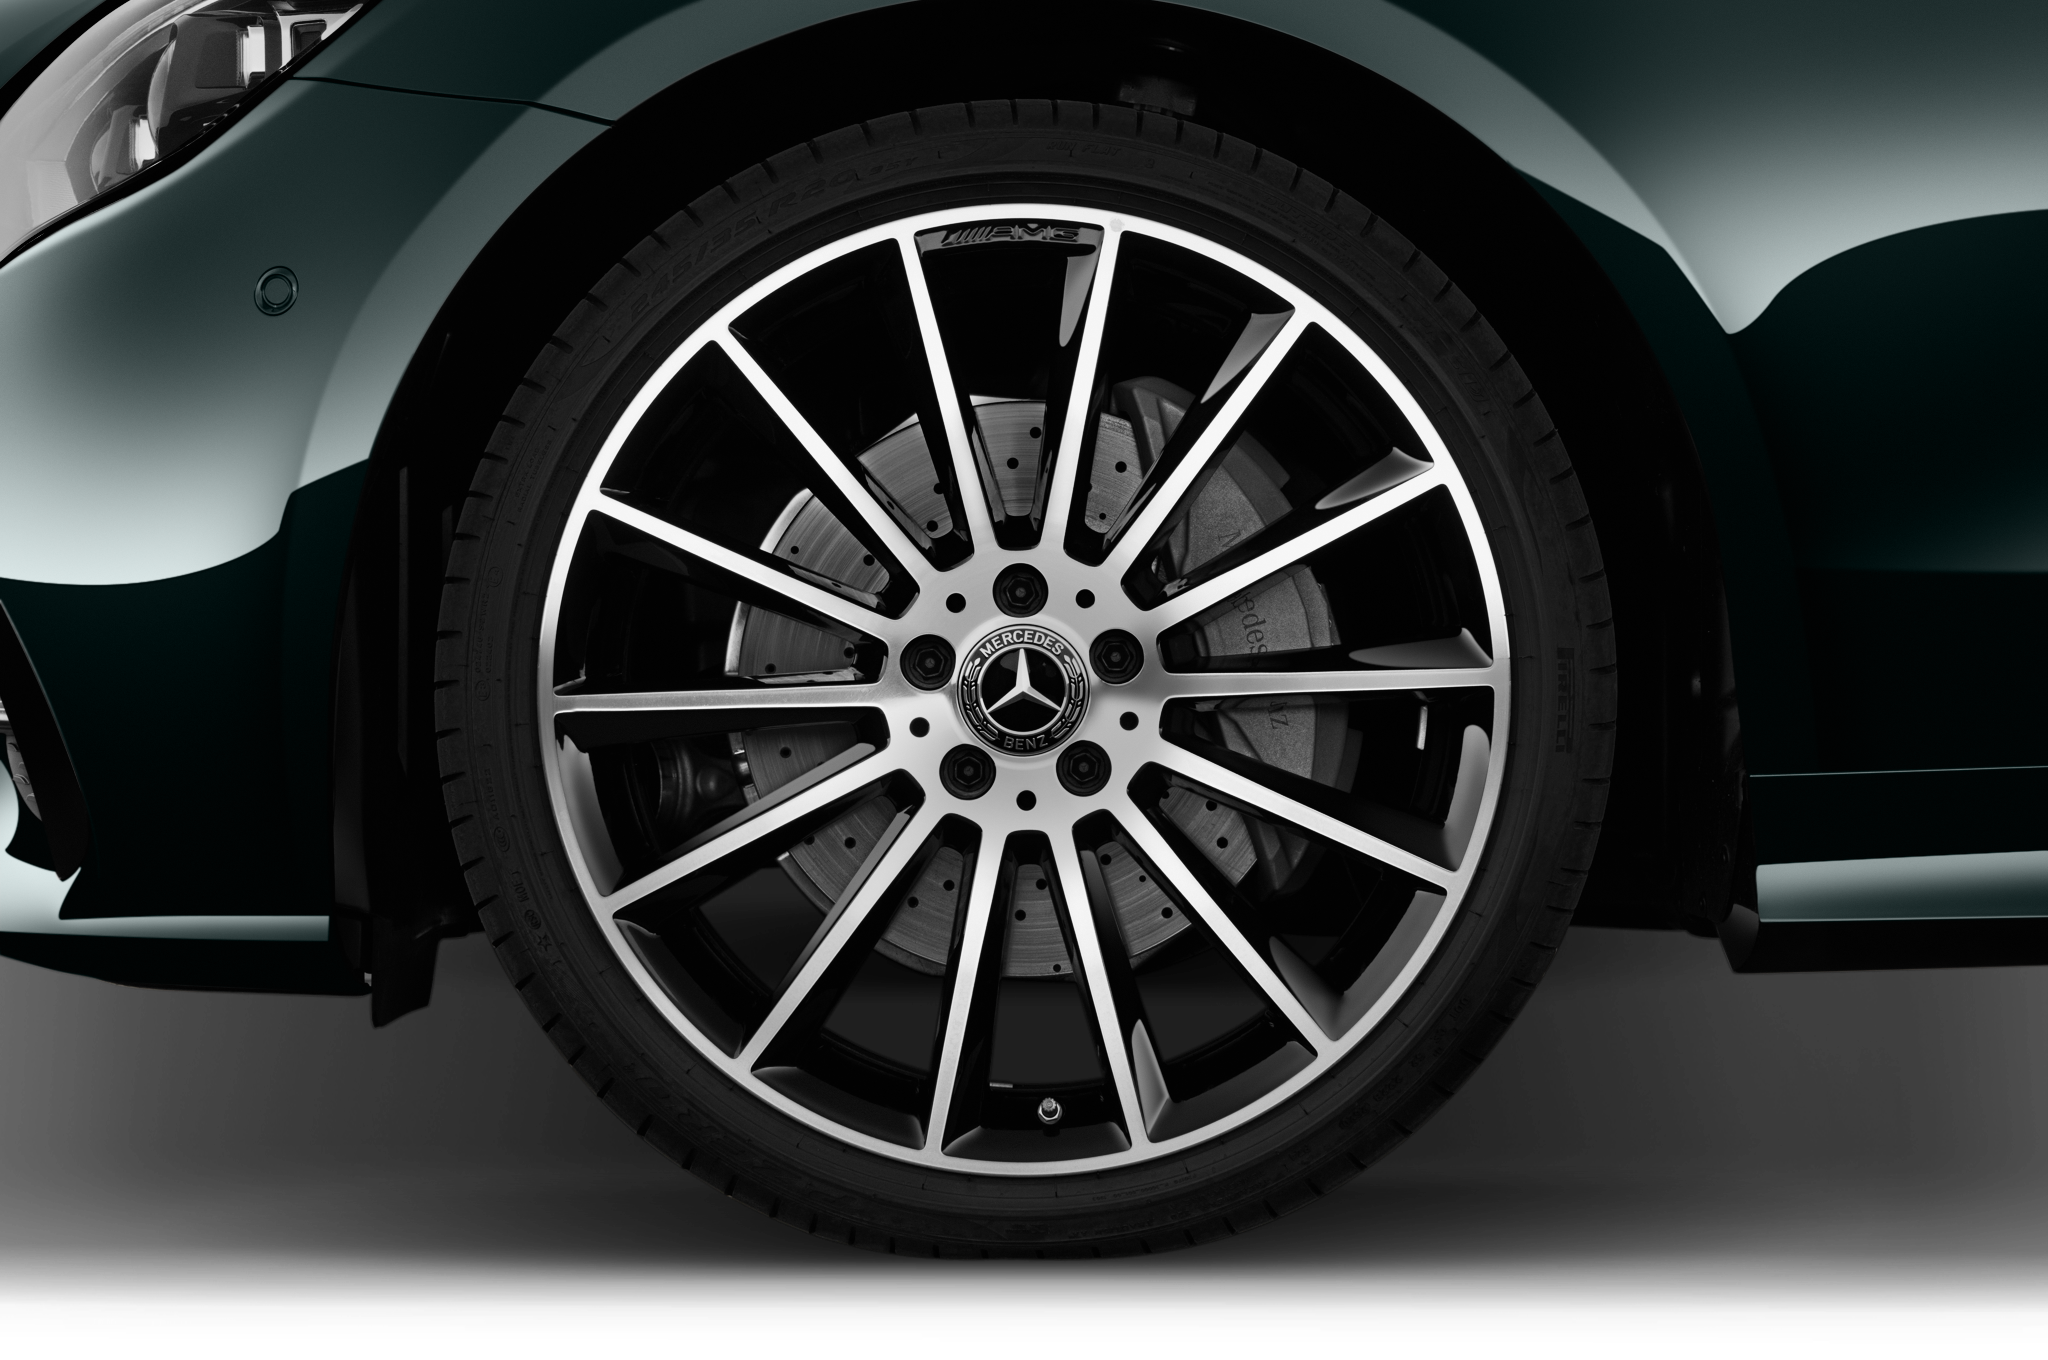 Mercedes E Class (Baujahr 2021) AMG Line 2 Türen Reifen und Felge